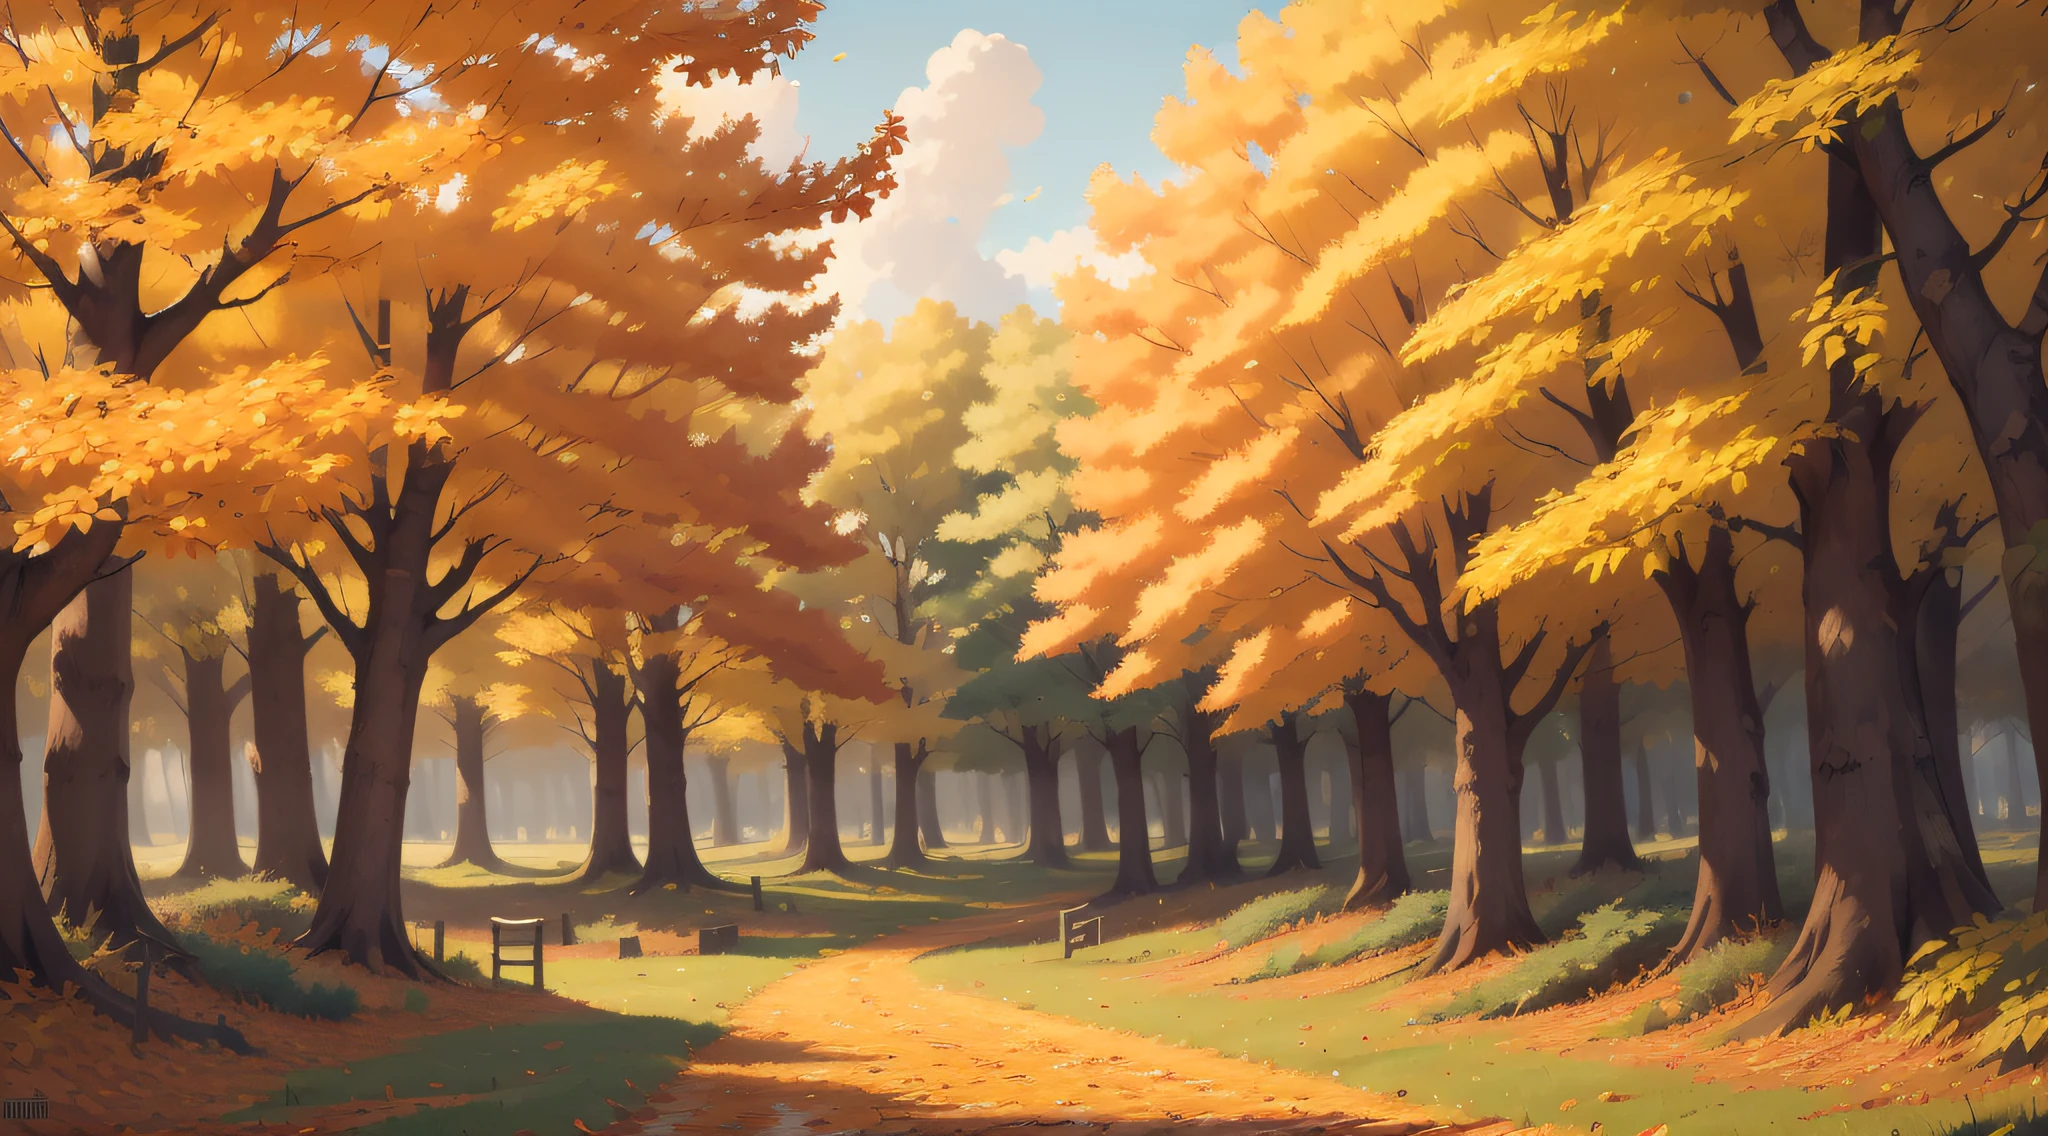 秋天的，樹葉金黃 秋風吹過，金色的葉子飄落在空中